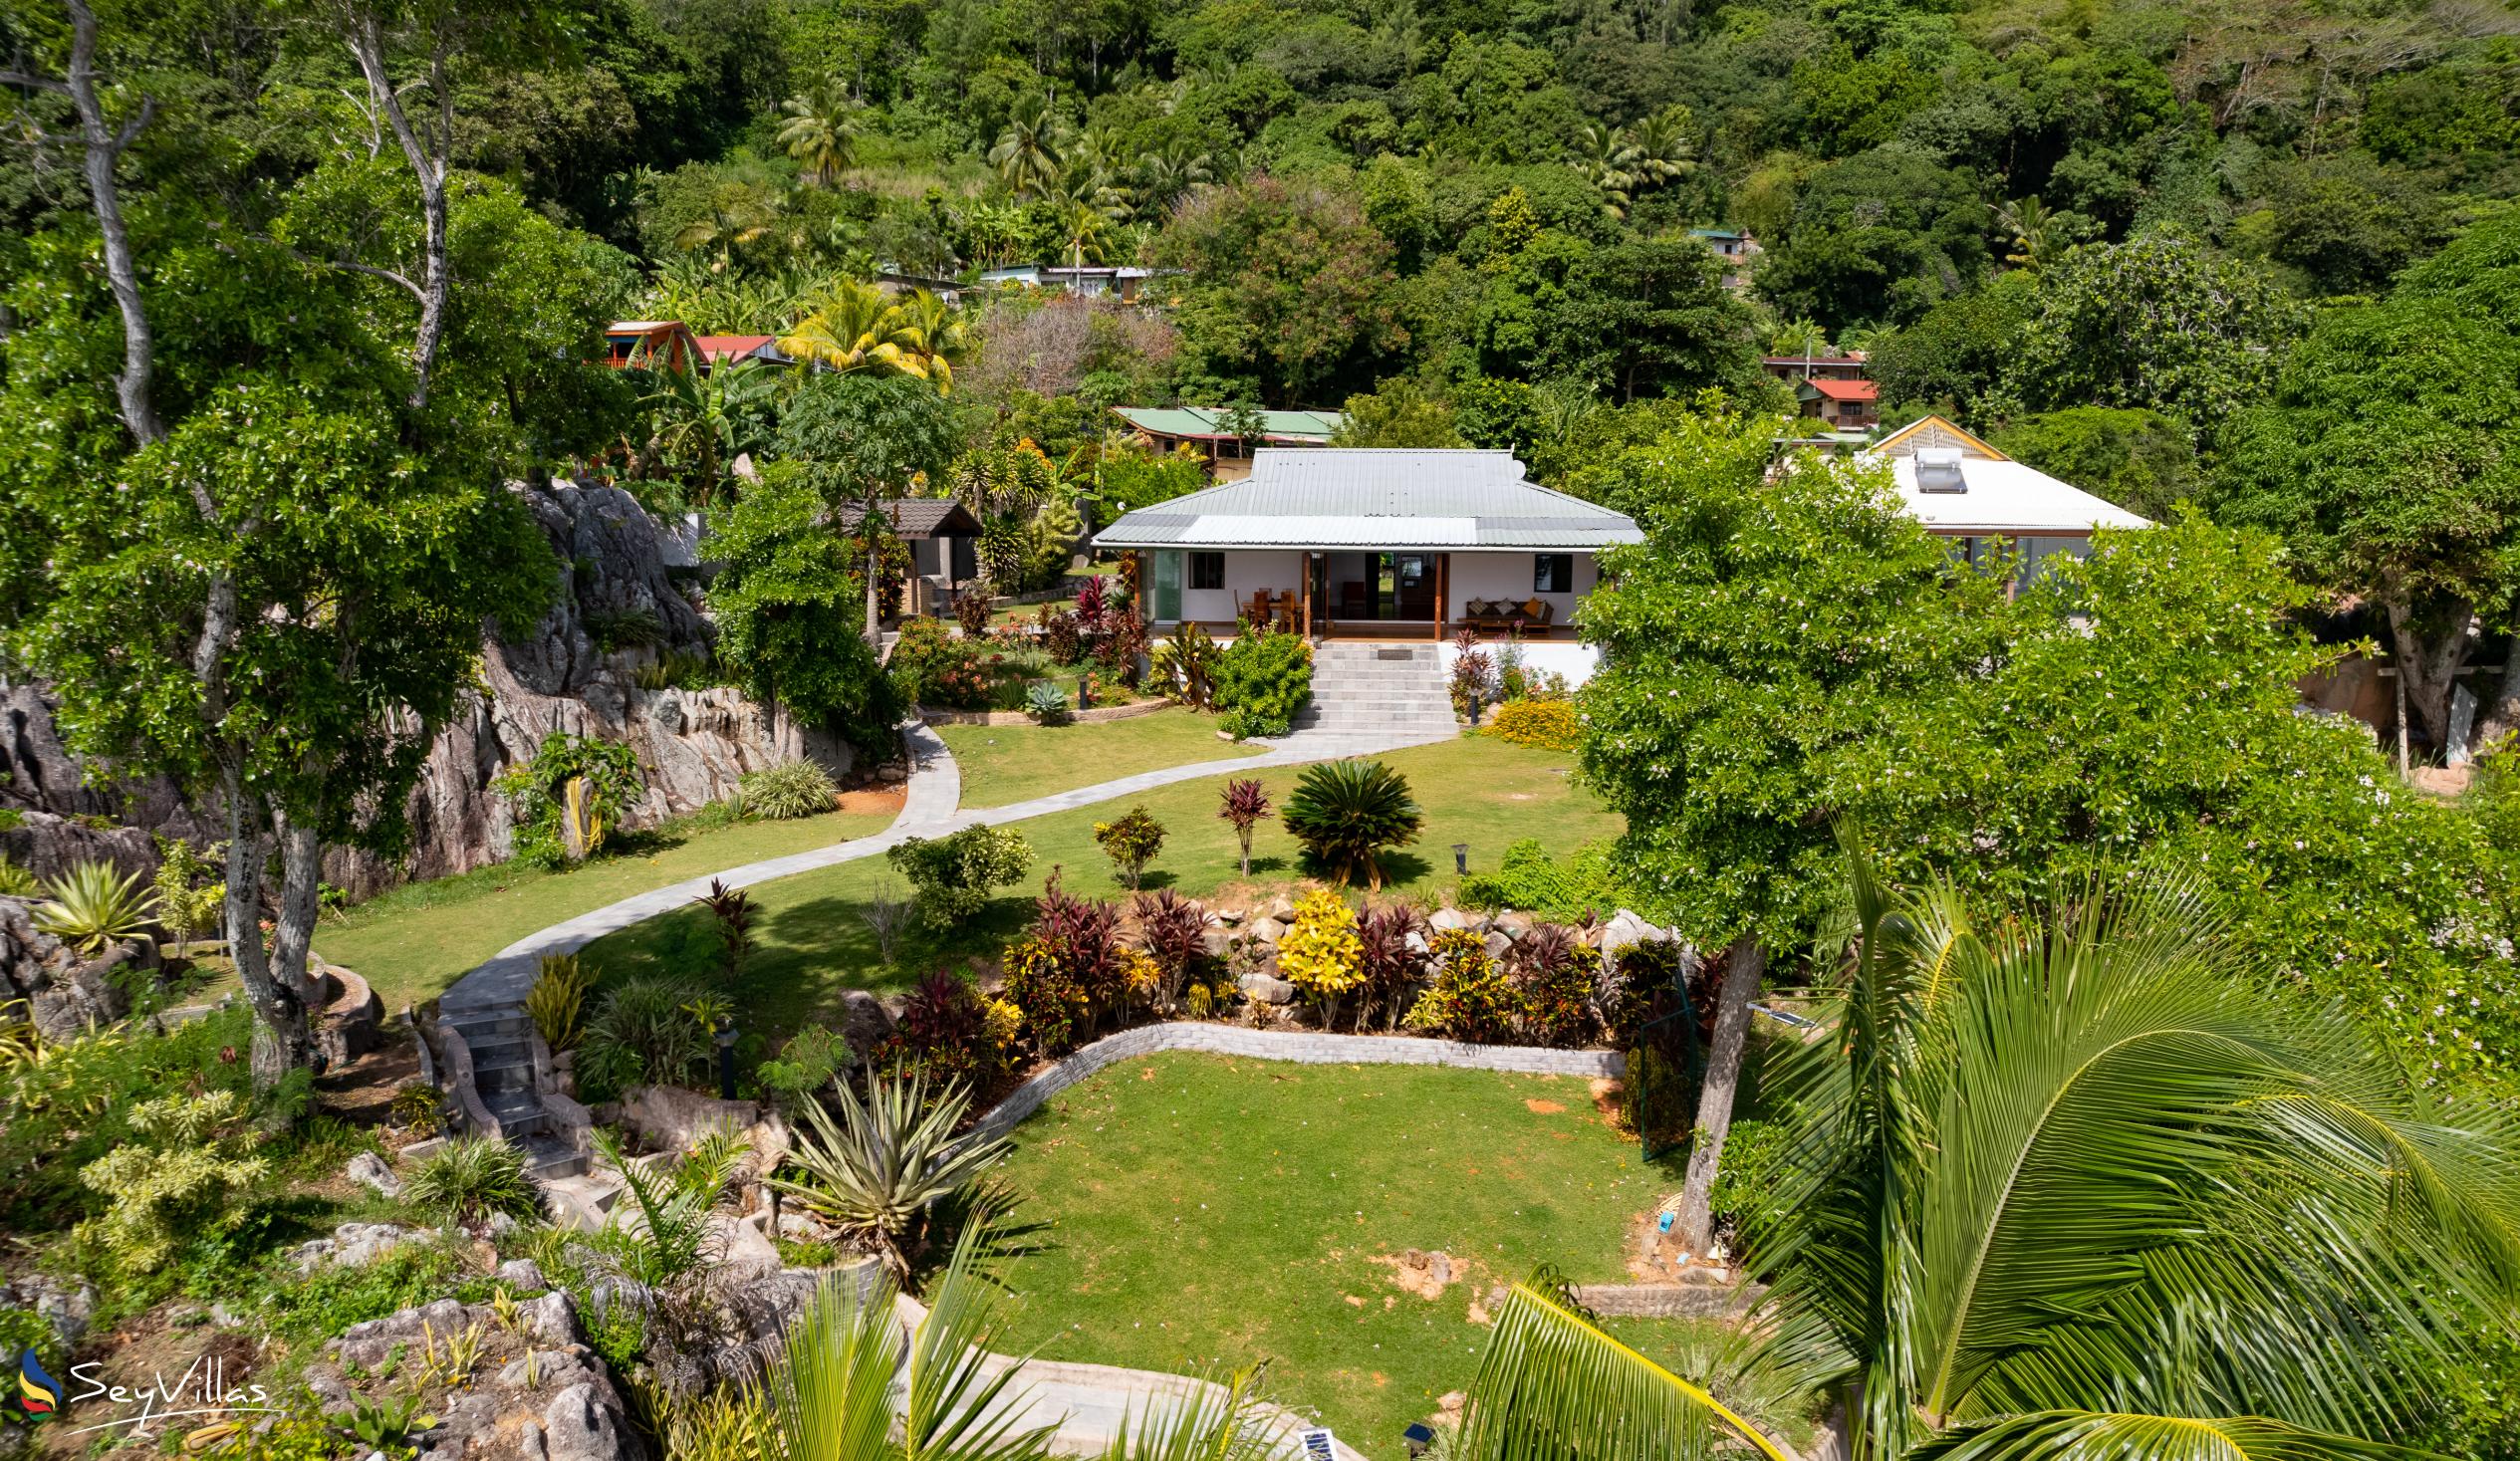 Foto 11: Cote Mer Villa - Aussenbereich - Praslin (Seychellen)